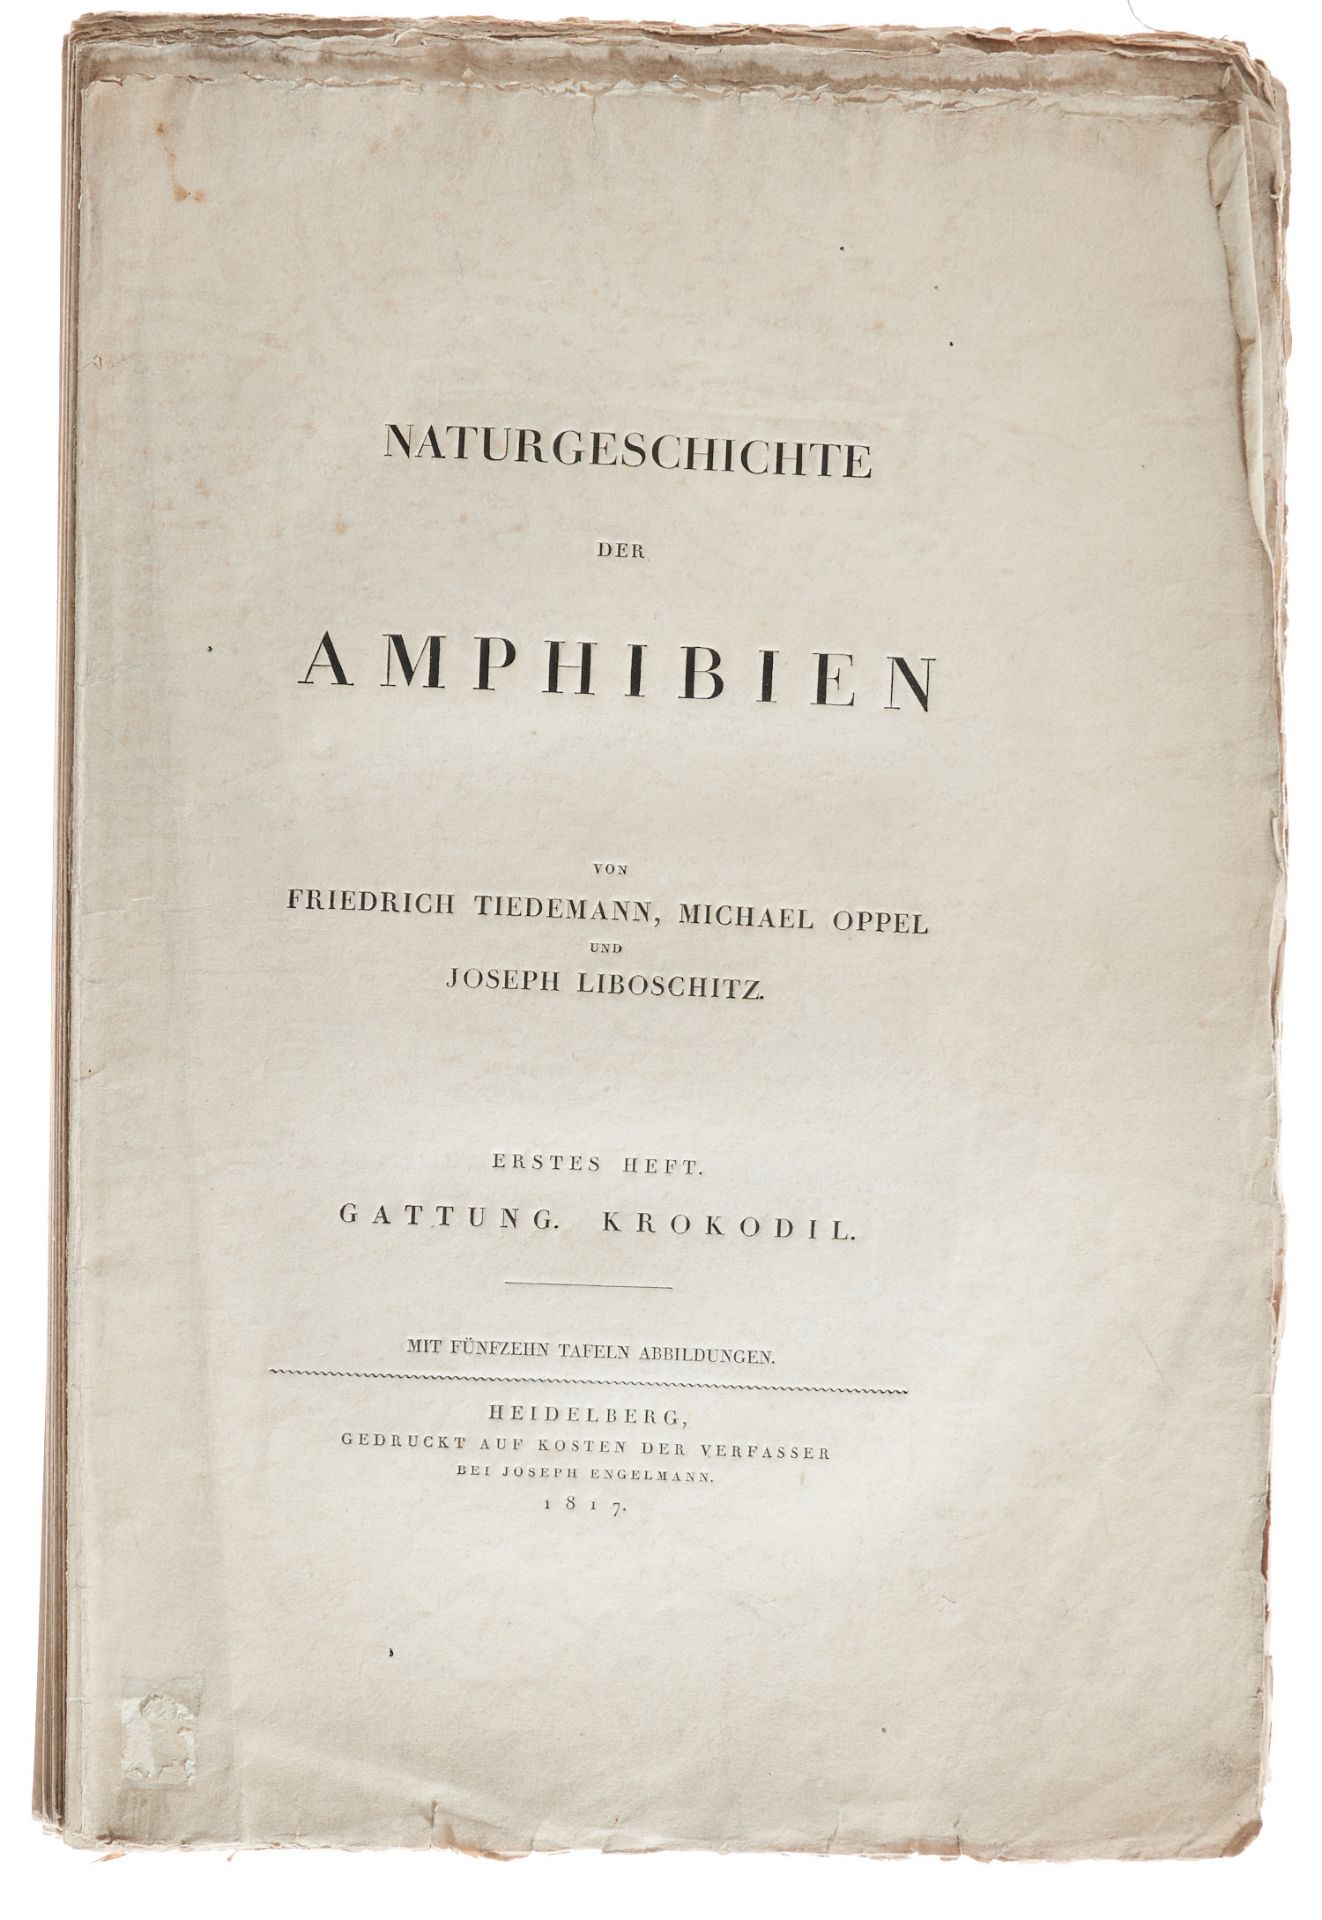 Herpetologie - Tiedemann, F., Oppel, (N.) M., und J. Liboschitz,